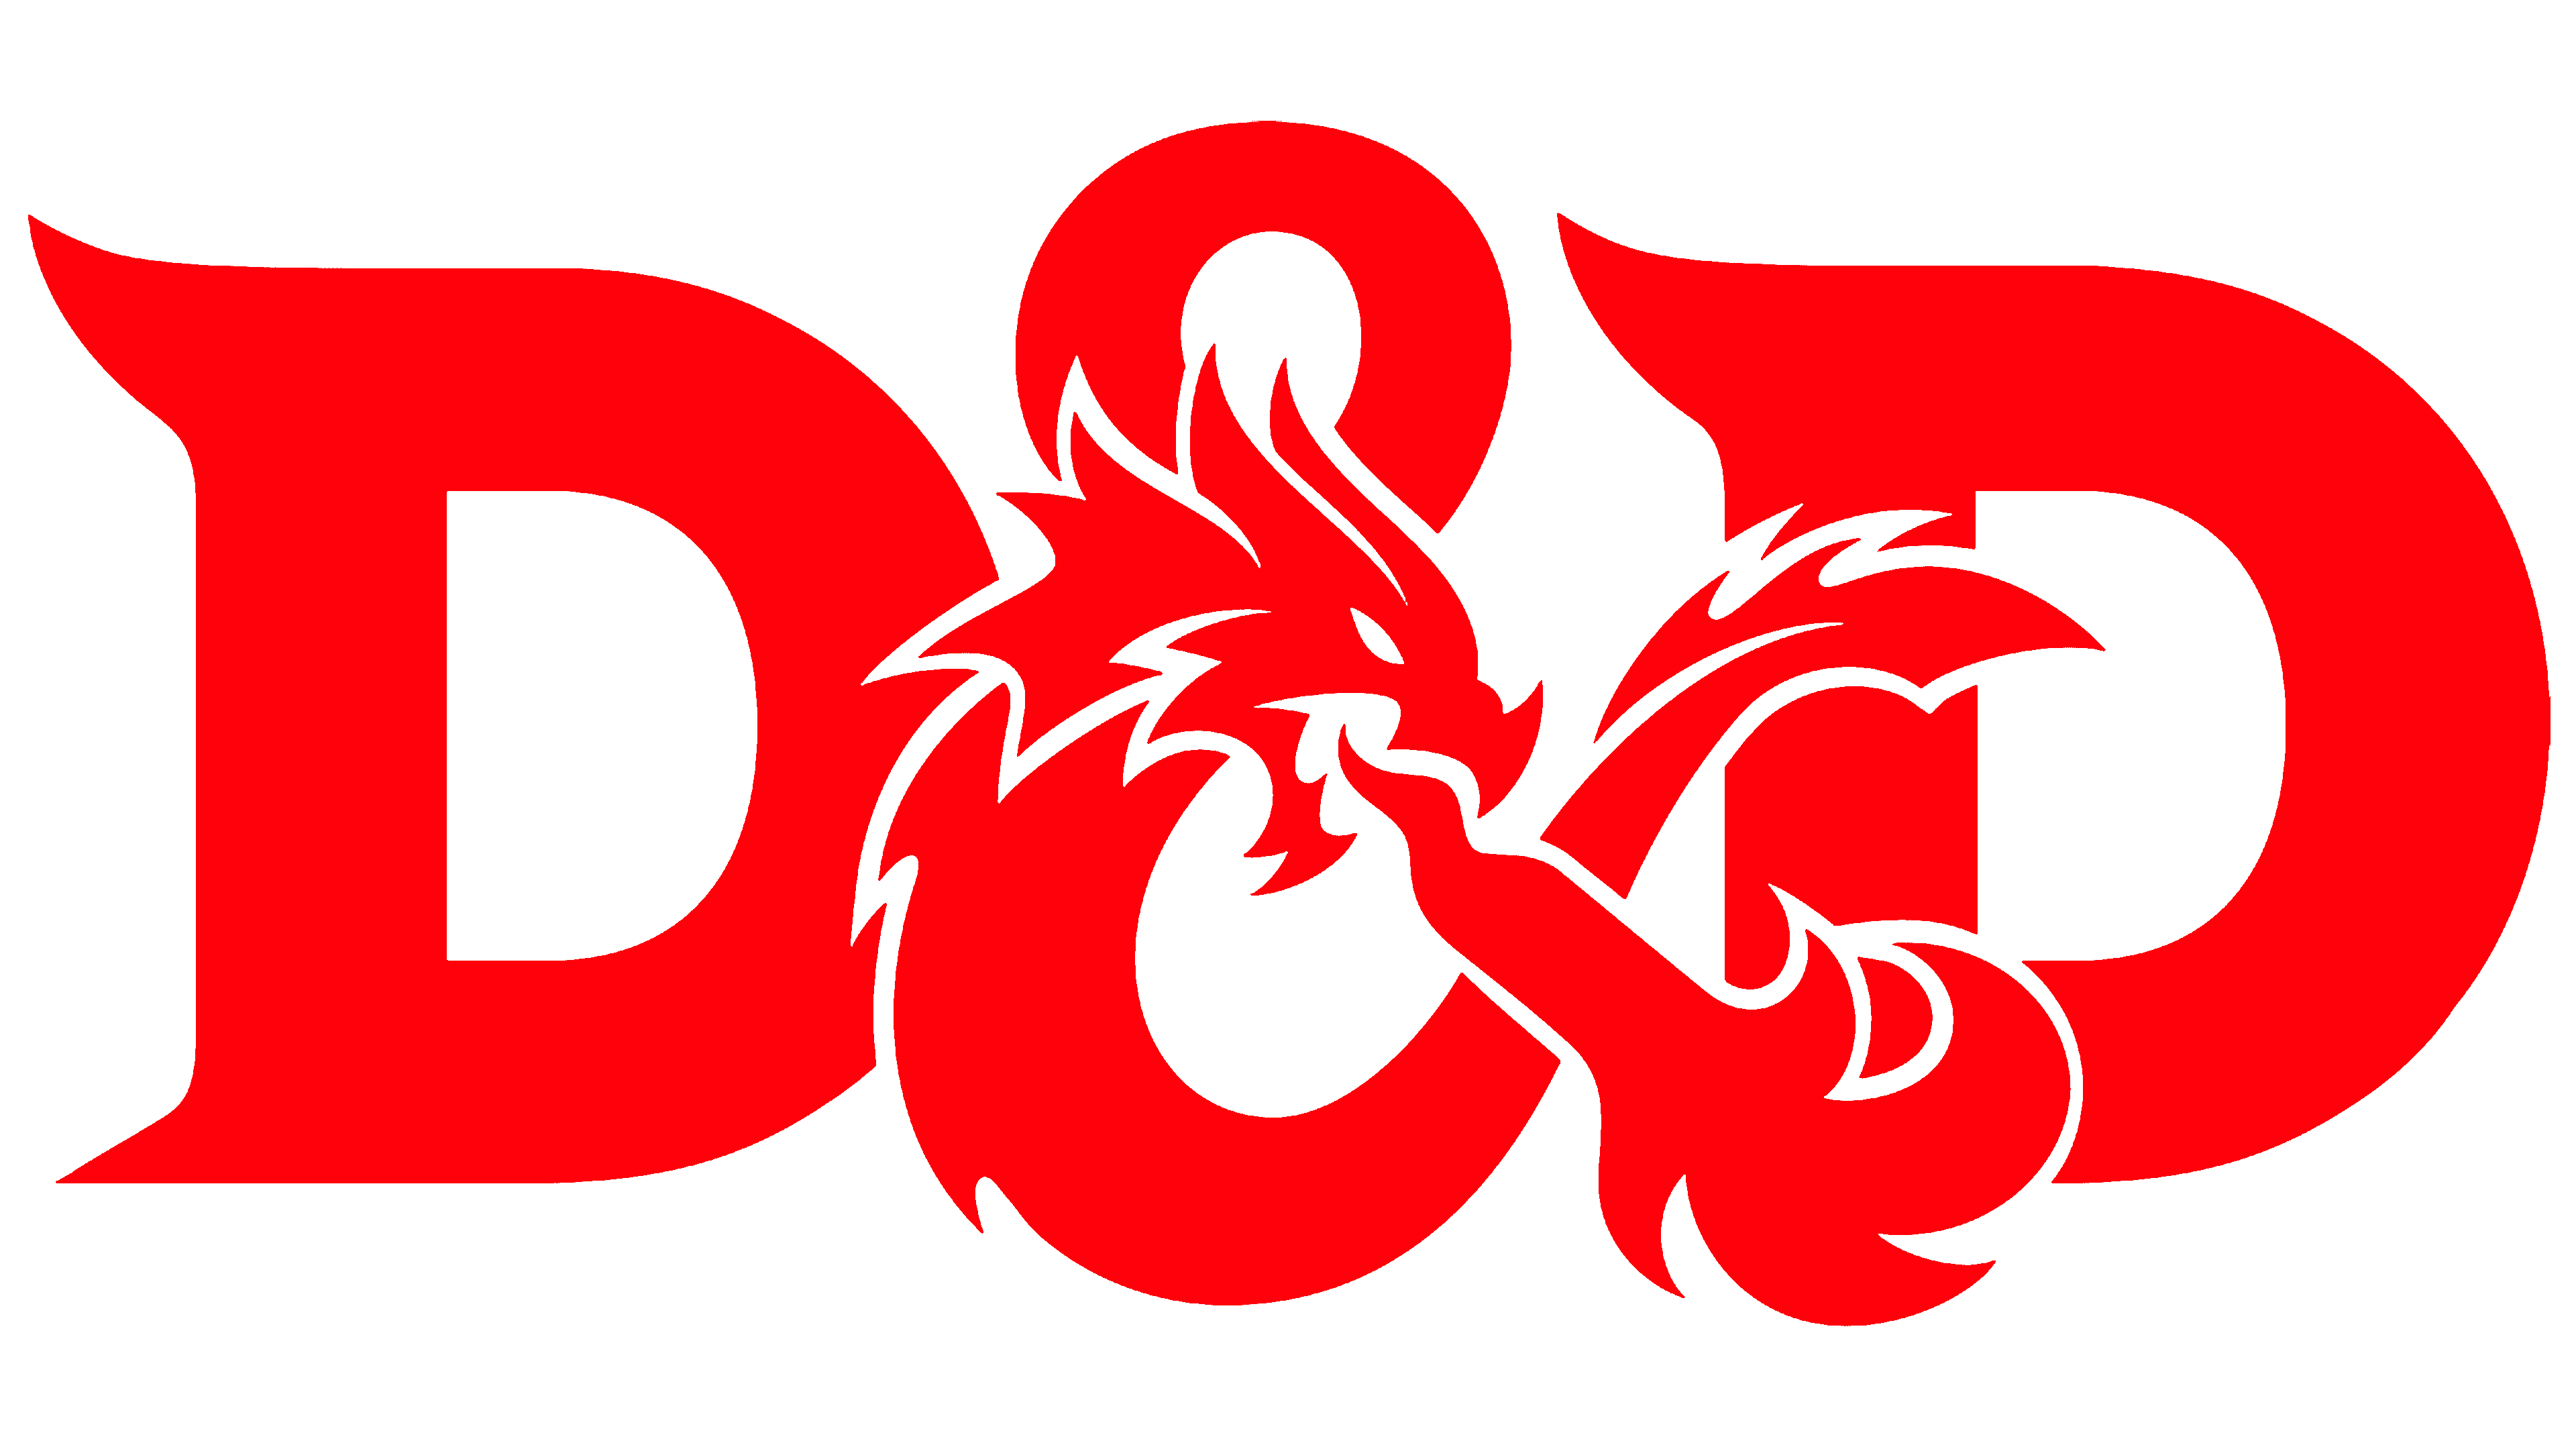 DnD logo